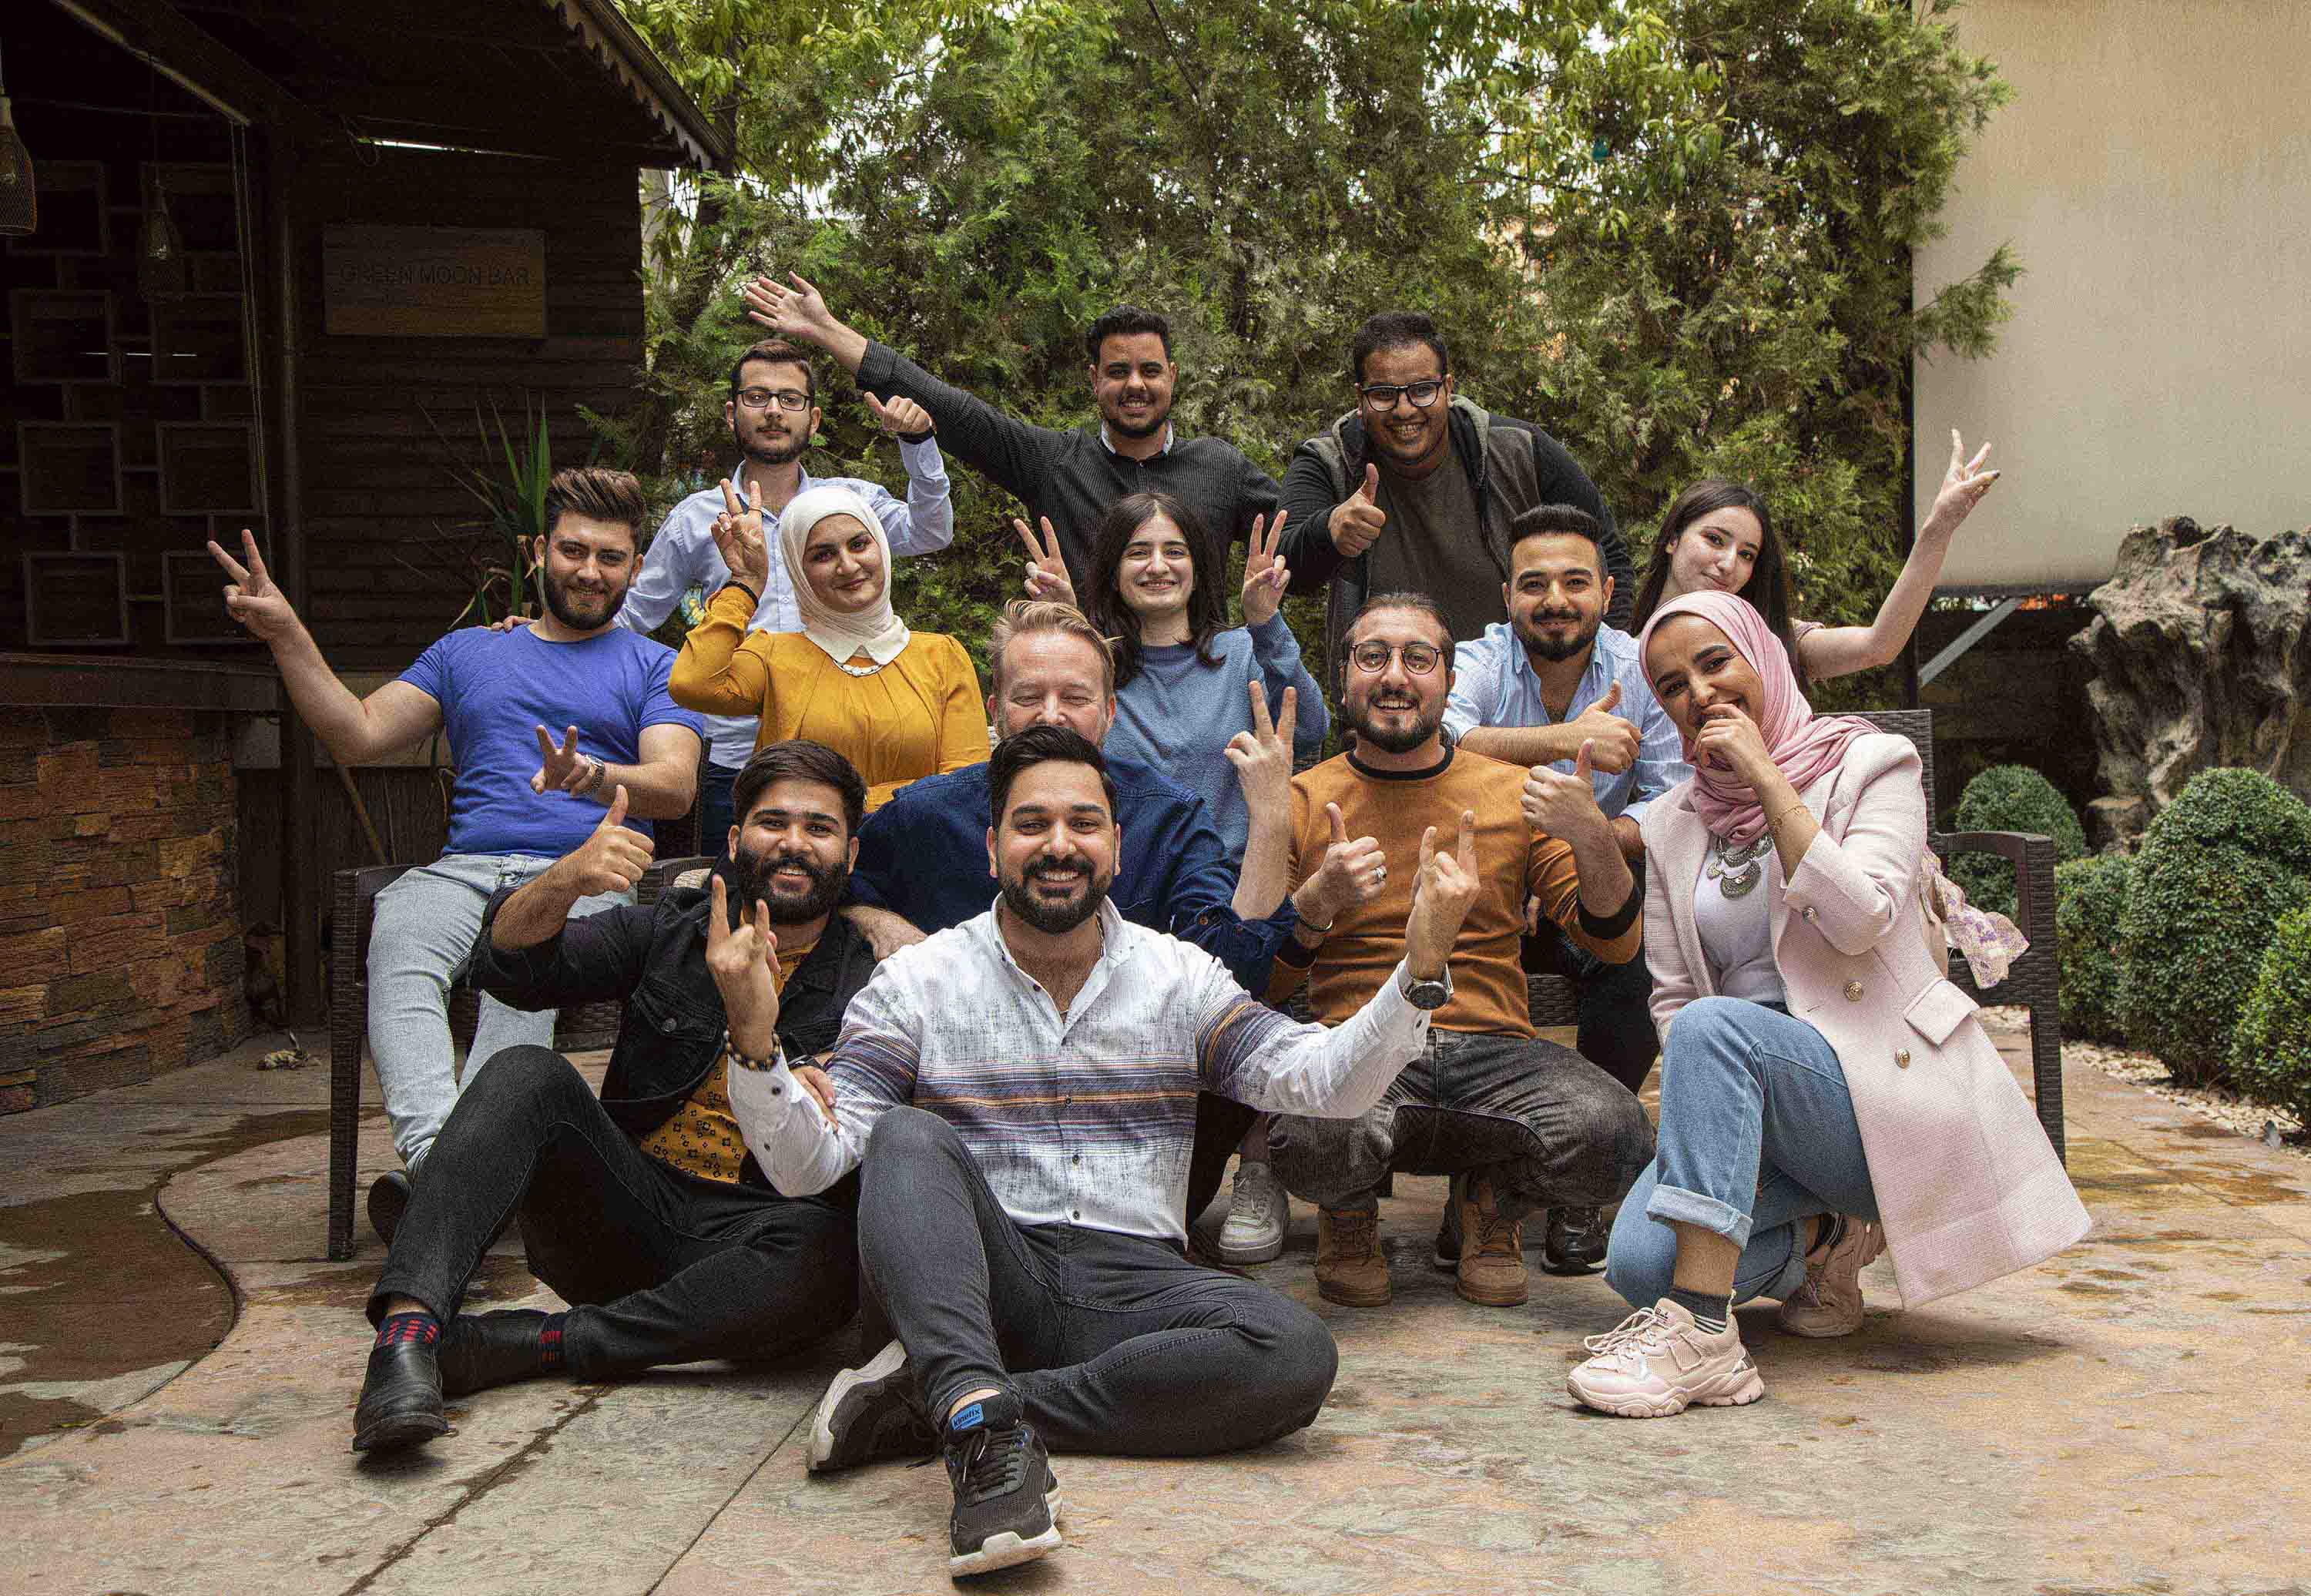 Salam-ohjelman aikana nuoret pääsevät tutustumaan erilaisista taustoista, uskonnollisista ryhmistä ja eri kaupungeista lähtöisin oleviin ikätovereihinsa Irakissa. Nuoria yhdistää halu rakentaa rauhaa ja parempaa yhteiskuntaa. Kuva: Tech4Peace